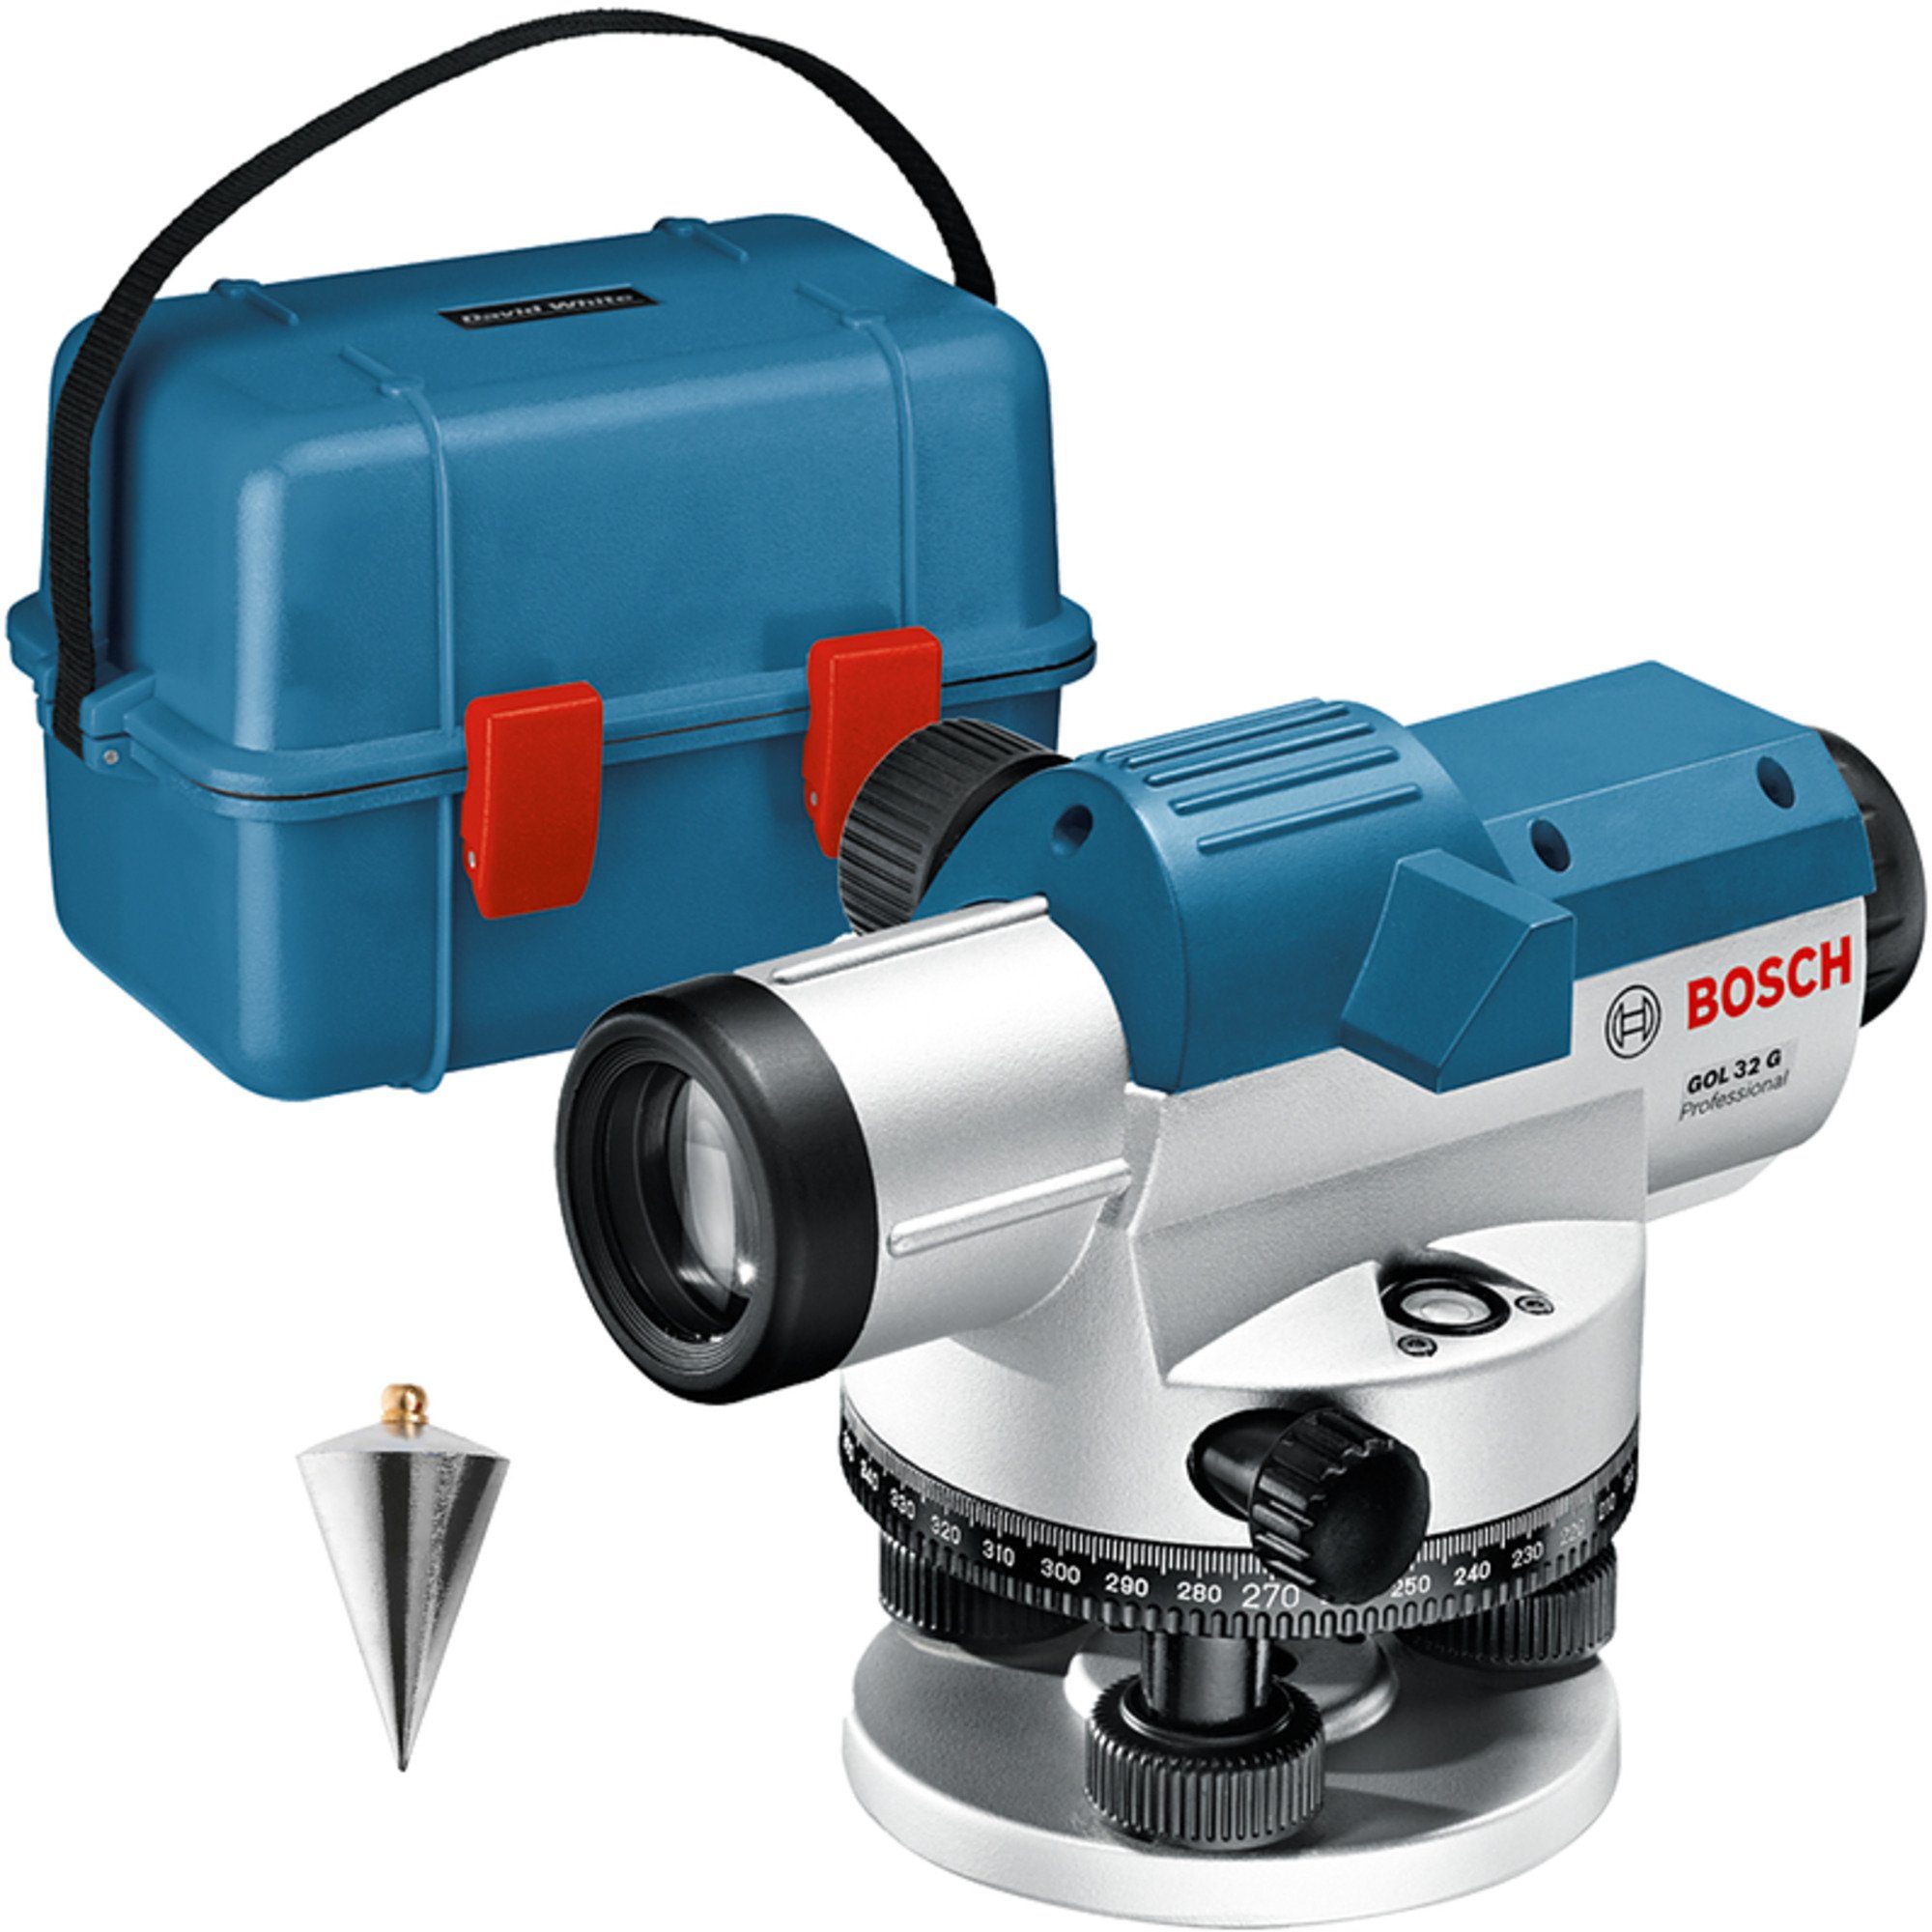 BOSCH Akku-Multifunktionswerkzeug Bosch Professional Optisches Nivelliergerät GOL 32